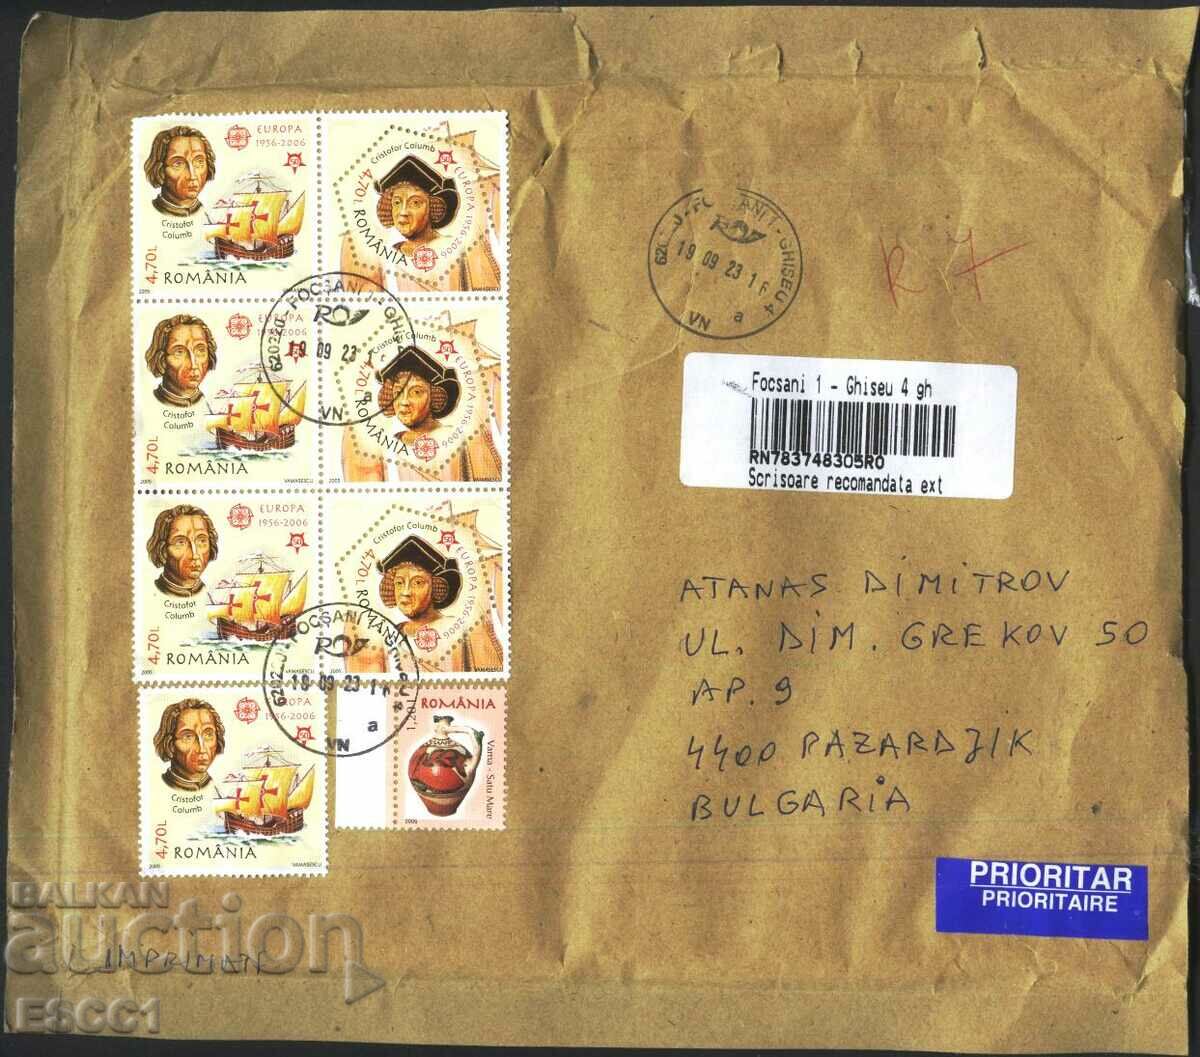 Plic de călătorie cu timbre Europa SEP 2005 Urcior 2005 din România